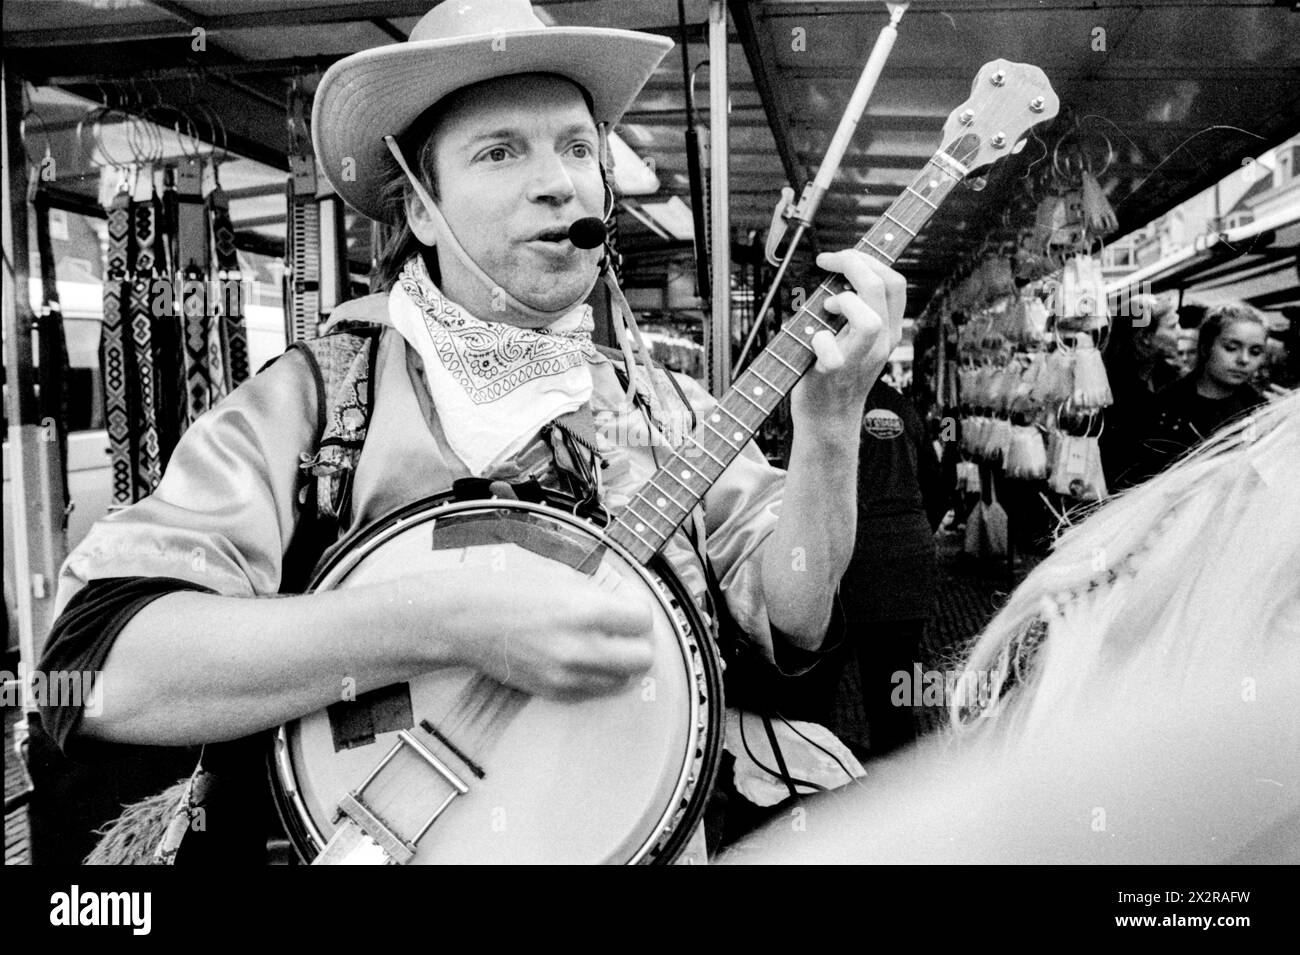 Unterhaltung Cowboy Amateur Cowboy Performer spielt und singt auf dem Wochenmarkt in der Innenstadt, um die Besucher zu unterhalten. Delft, Niederlande. Delft Markt Zuid-Holland Nederland Copyright: XGuidoxKoppesxPhotox Stockfoto